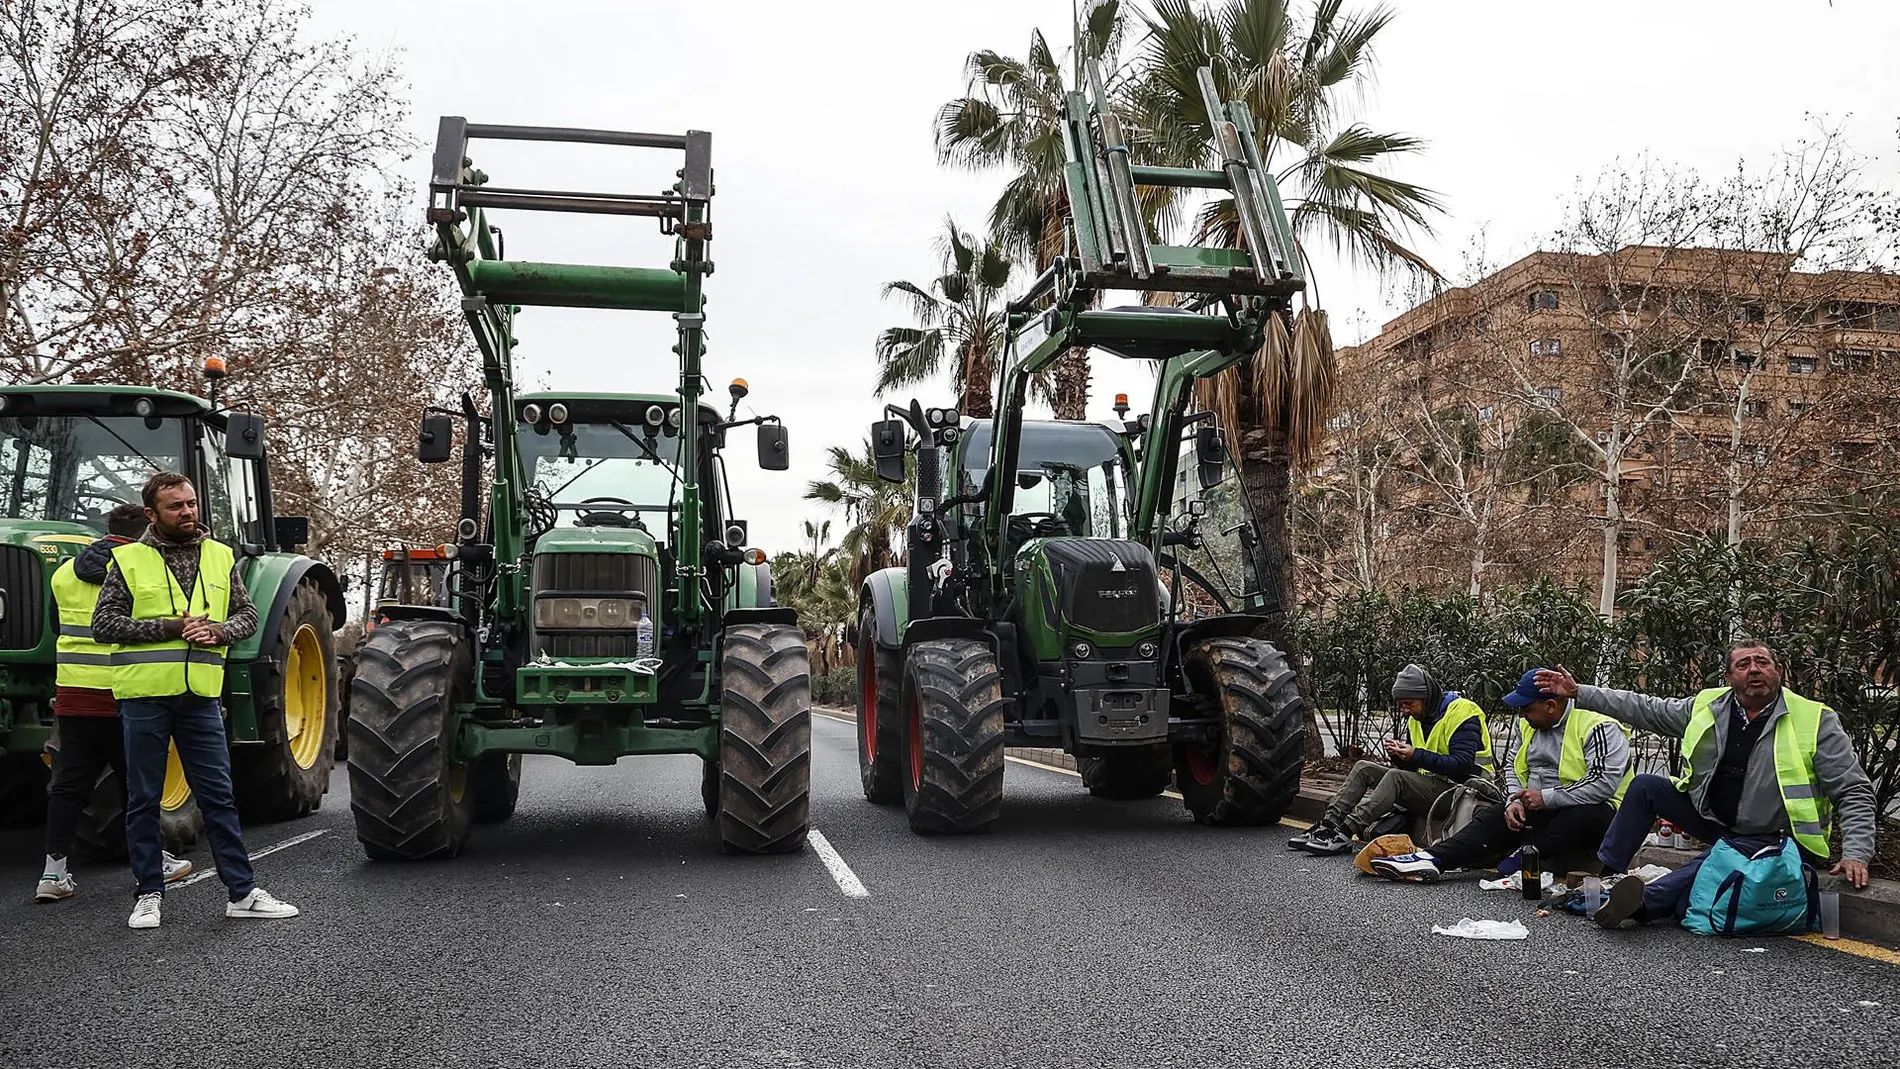 Delegada Valencia reclama que las tractoradas se hagan "de manera regulada" por "grave riesgo" de cortar carreteras